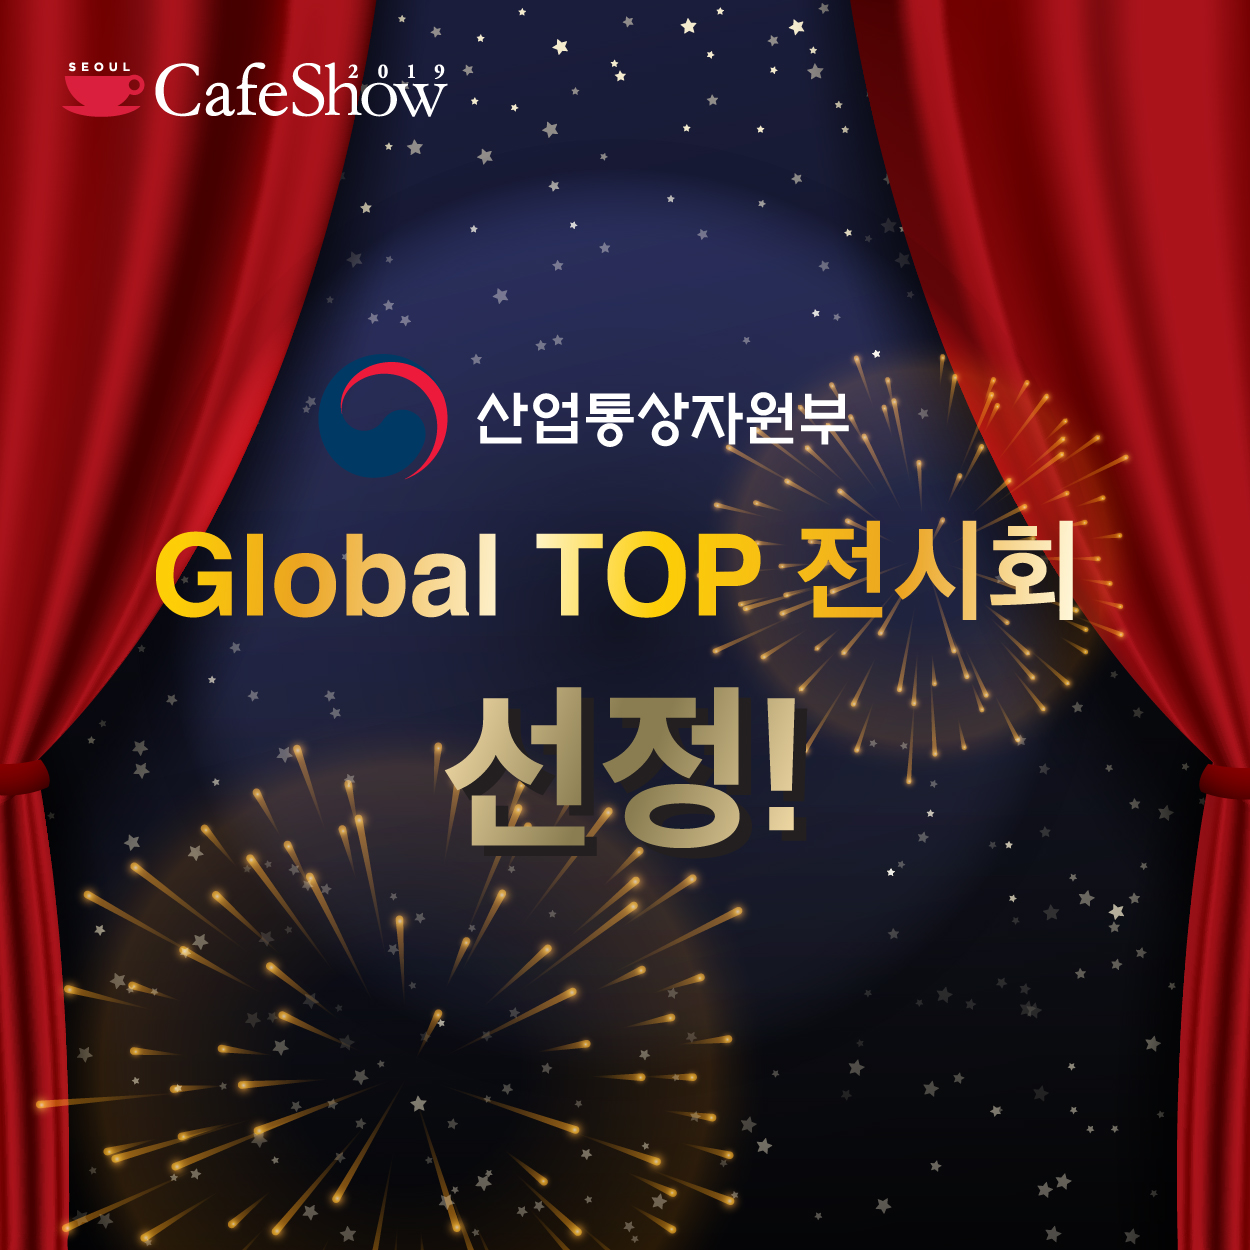 산업통상자원부 선정 글로벌 탑 전시회 서울카페쇼!